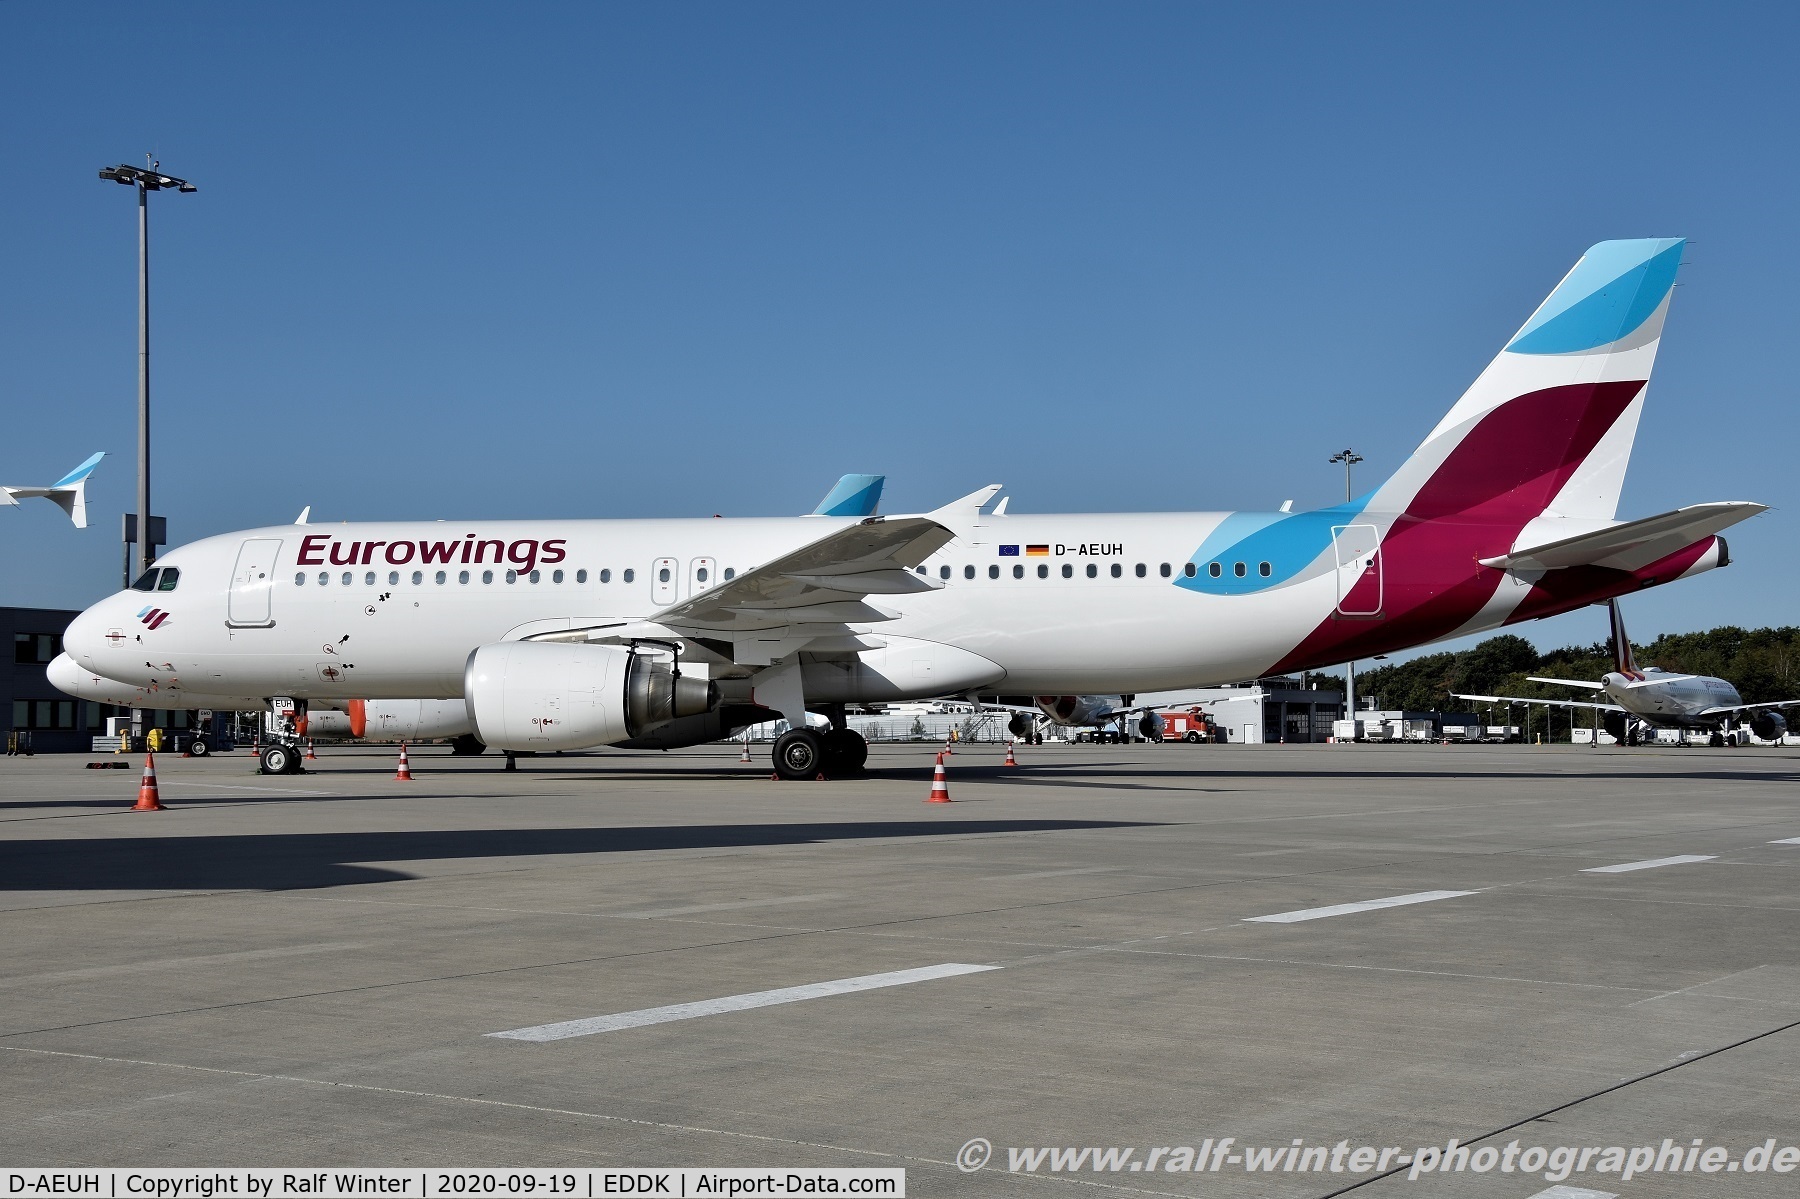 D-AEUH, 2010 Airbus A320-214 C/N 4329, Airbus A320-214 - EW EWG Eurowings opby Germanwings - 4329 - D-AEUH - 19.09.2020 - CGN